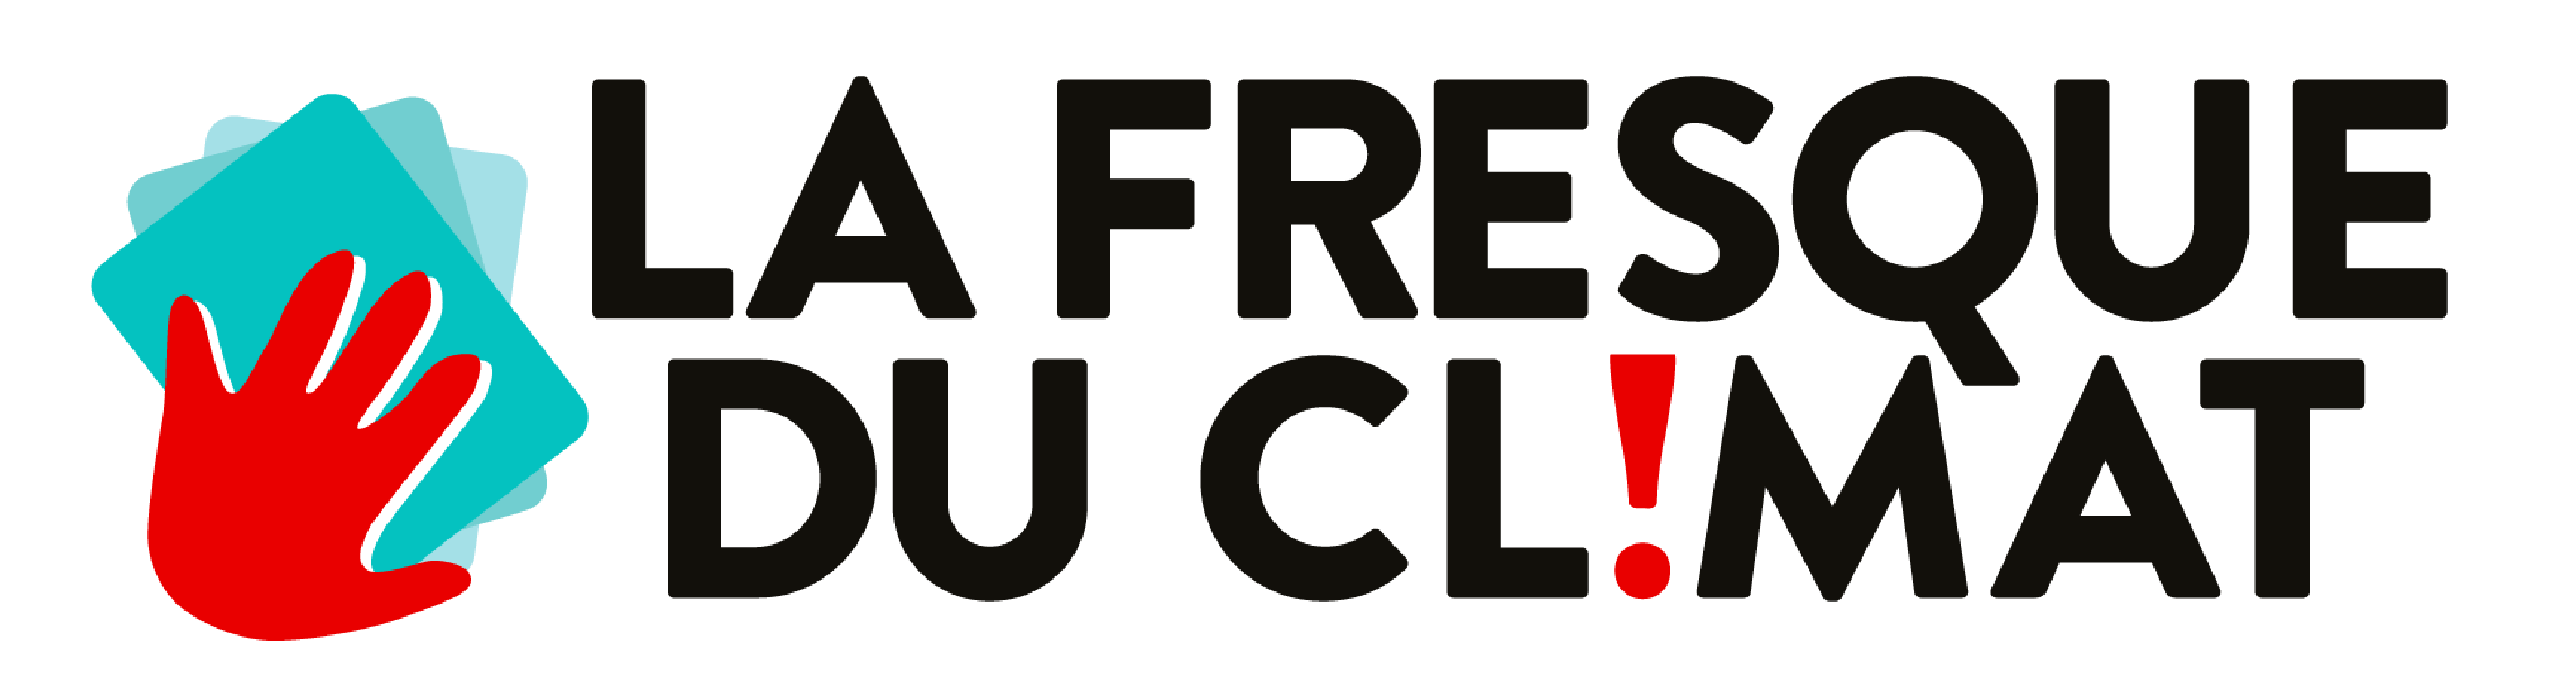 LA-FRESQUE-DU-CLIMAT-Logo.png